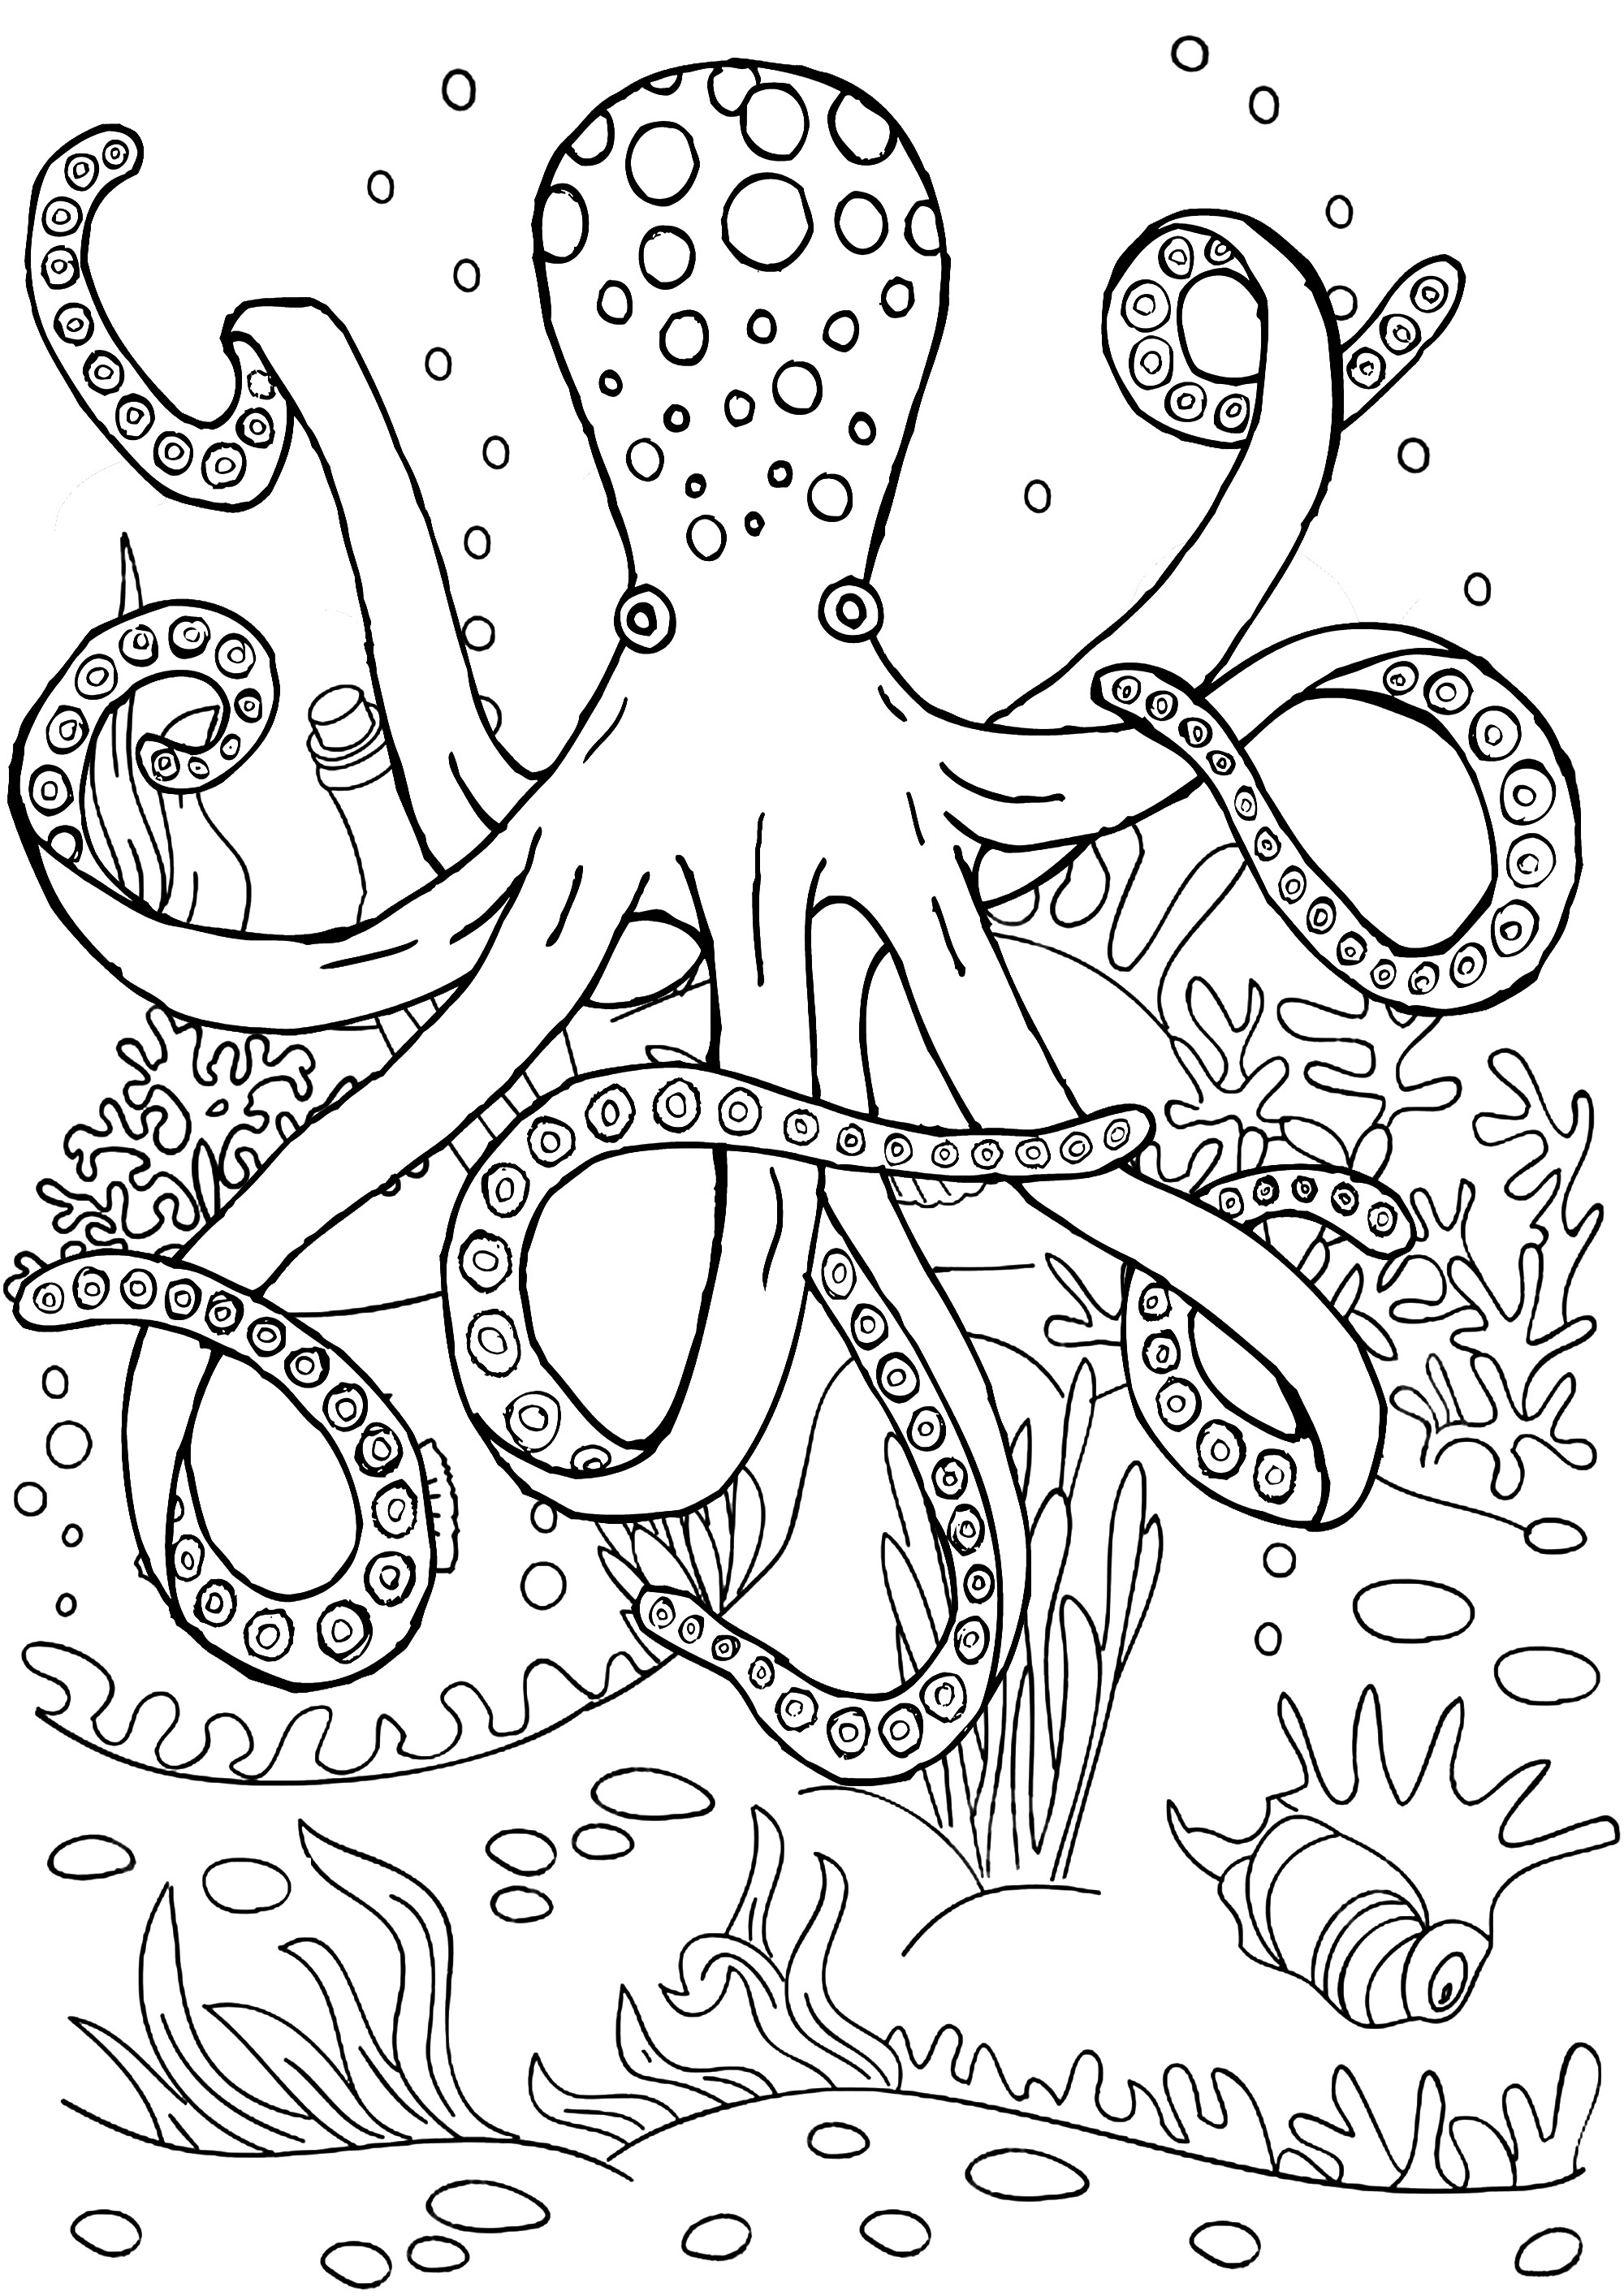 Un bel polpo dai fondali marini. Colorate questo polpo e i suoi tentacoli, così come il fondale marino in cui si trova.